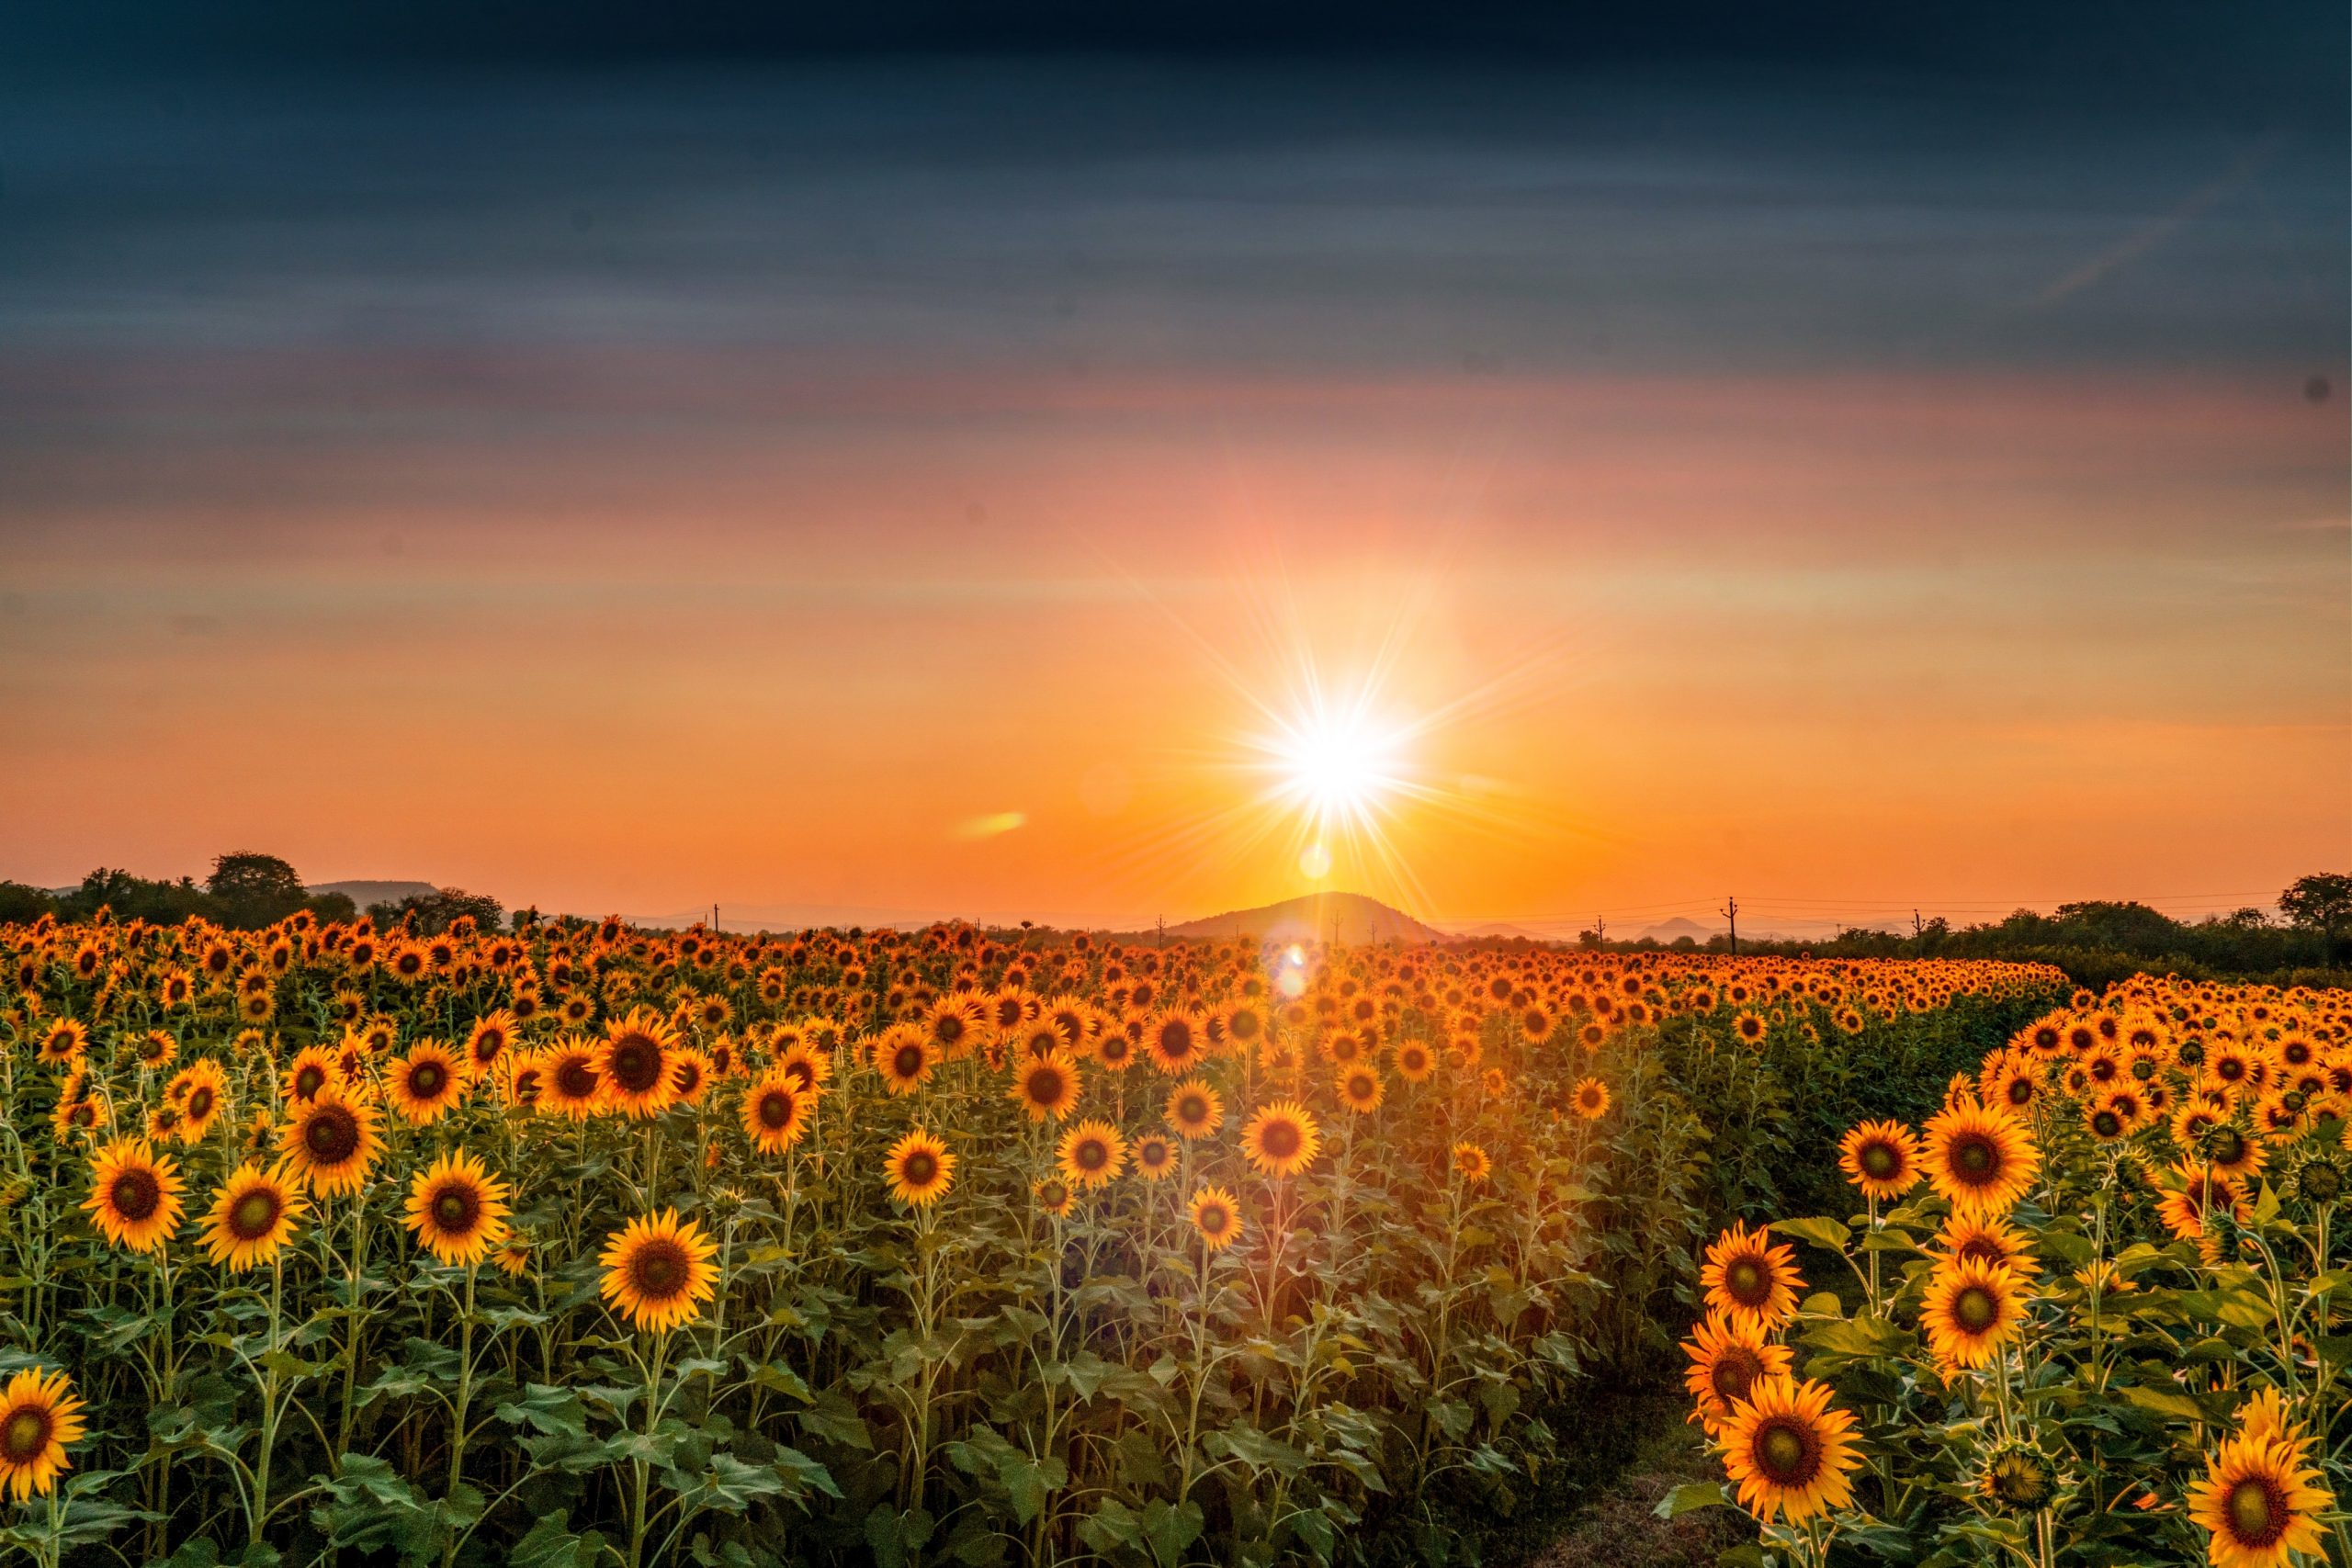 sunset over sunflowers